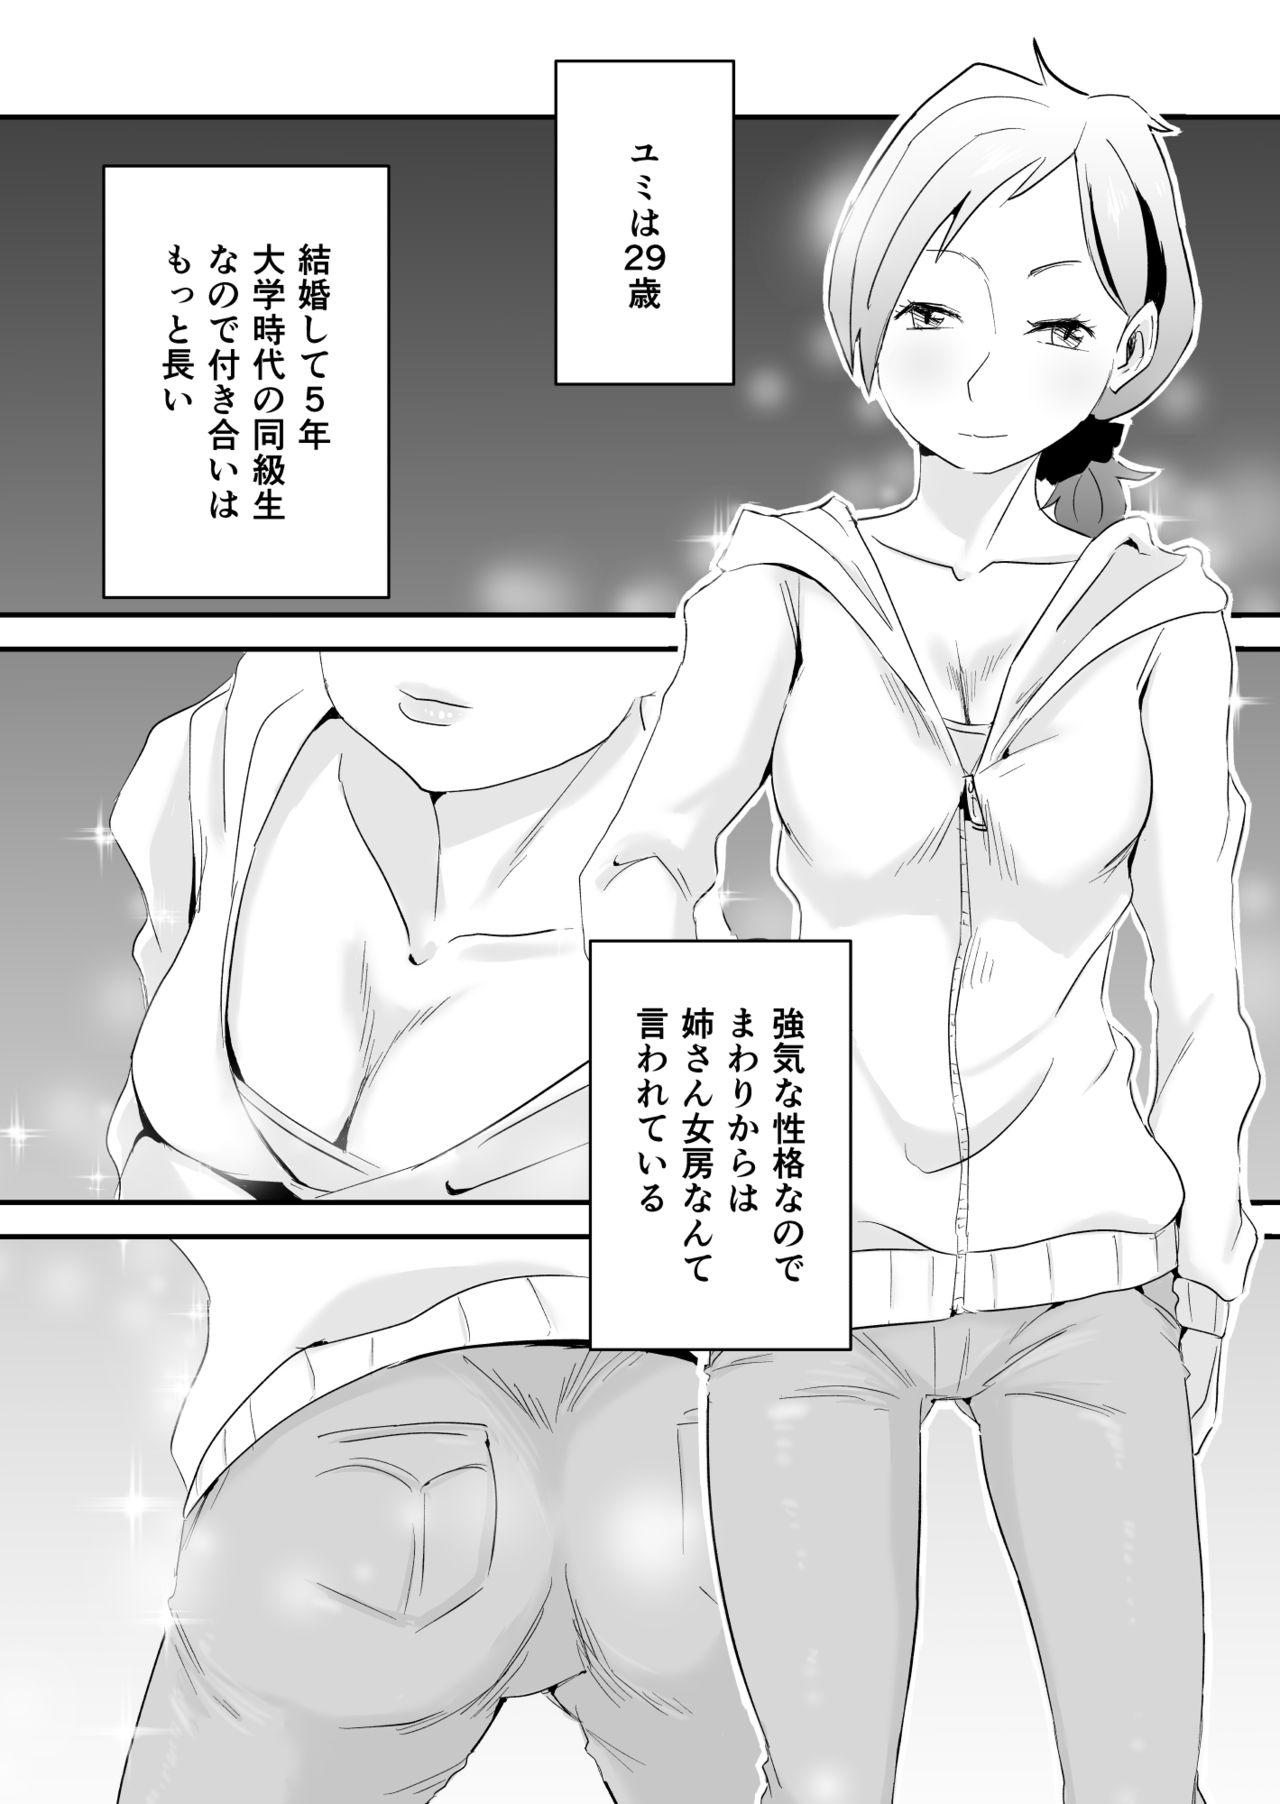 Gayfuck Anata no Nozomi vol. 1 Hunks - Page 5